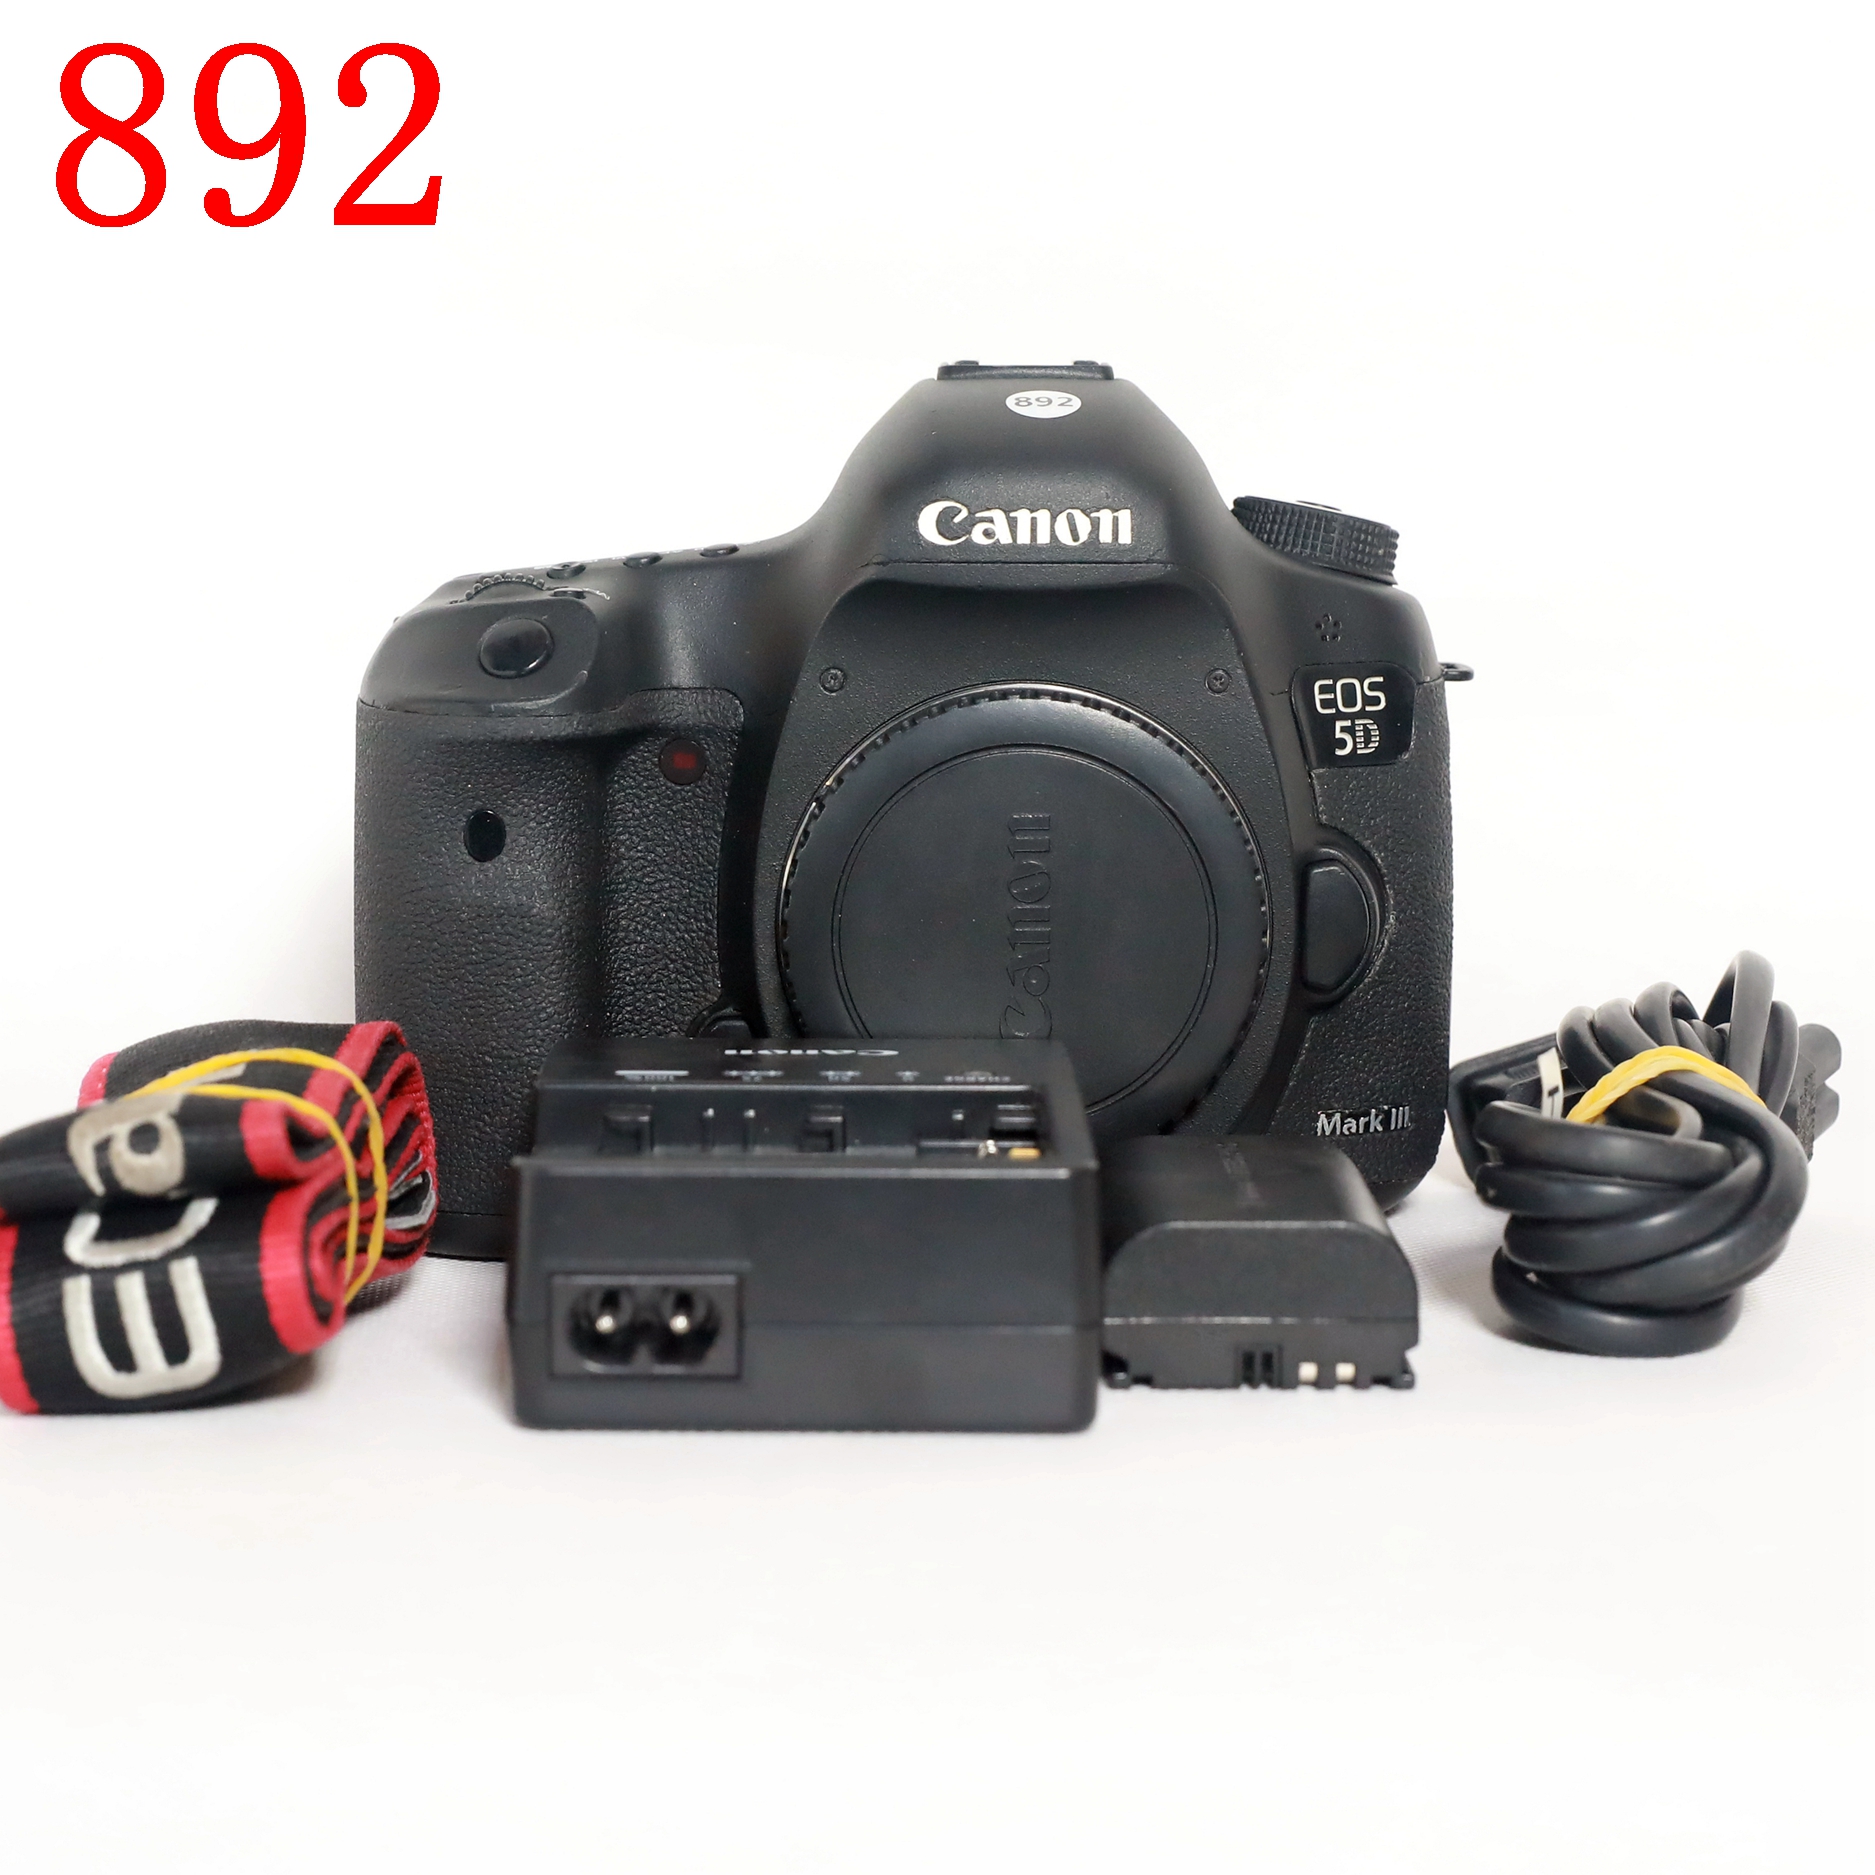 佳能 5D Mark III全画幅单反相机编号892